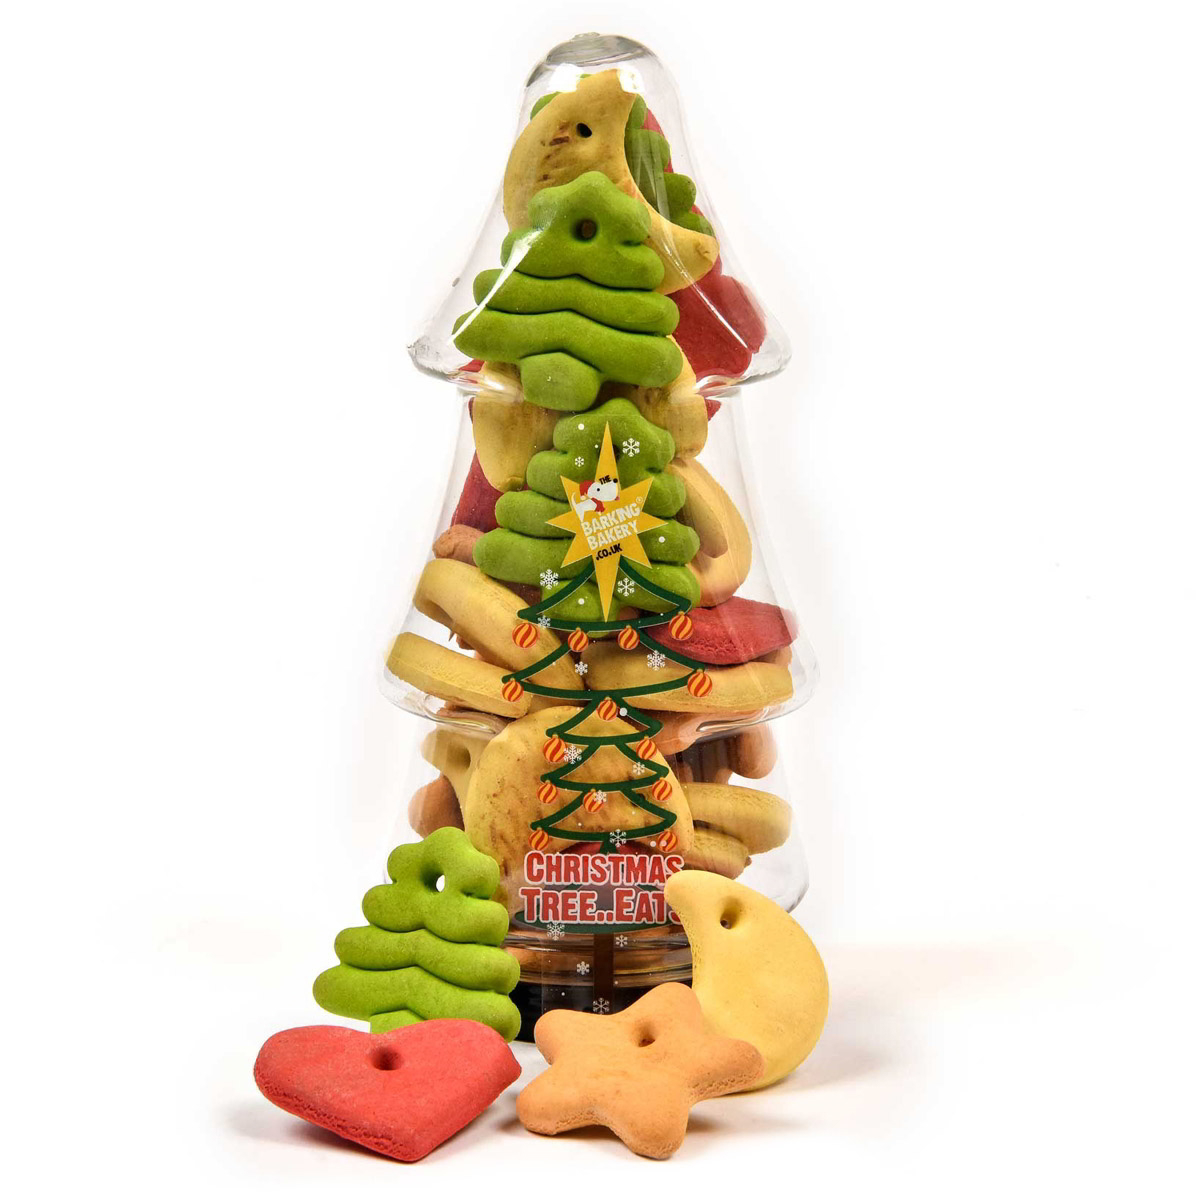 Barking Bakery Christmas Tree-Eats Festive Dog Treats